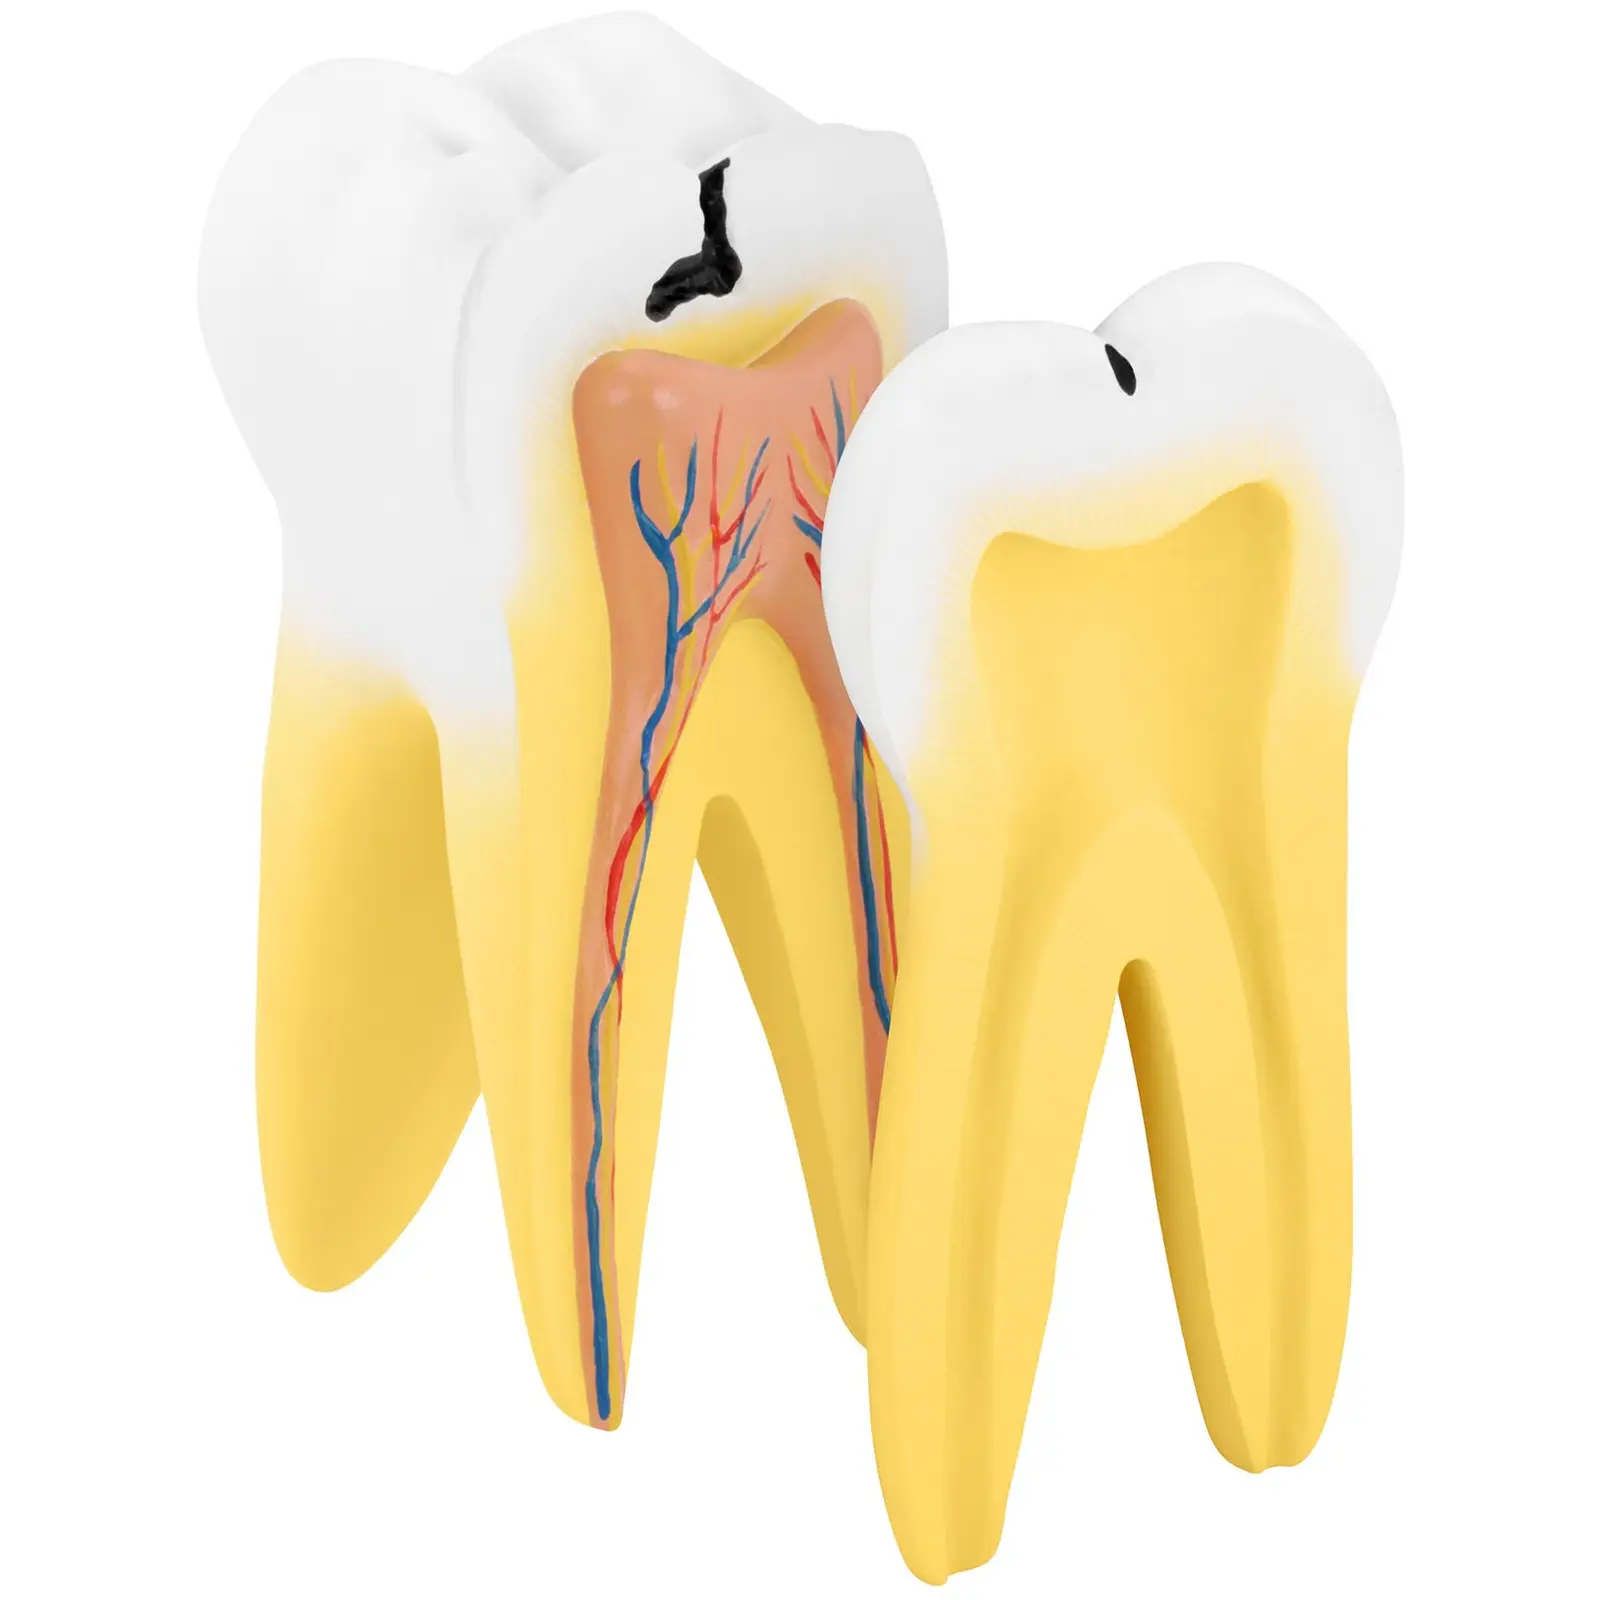 Modelo dental - molar con dos raíces - 2 piezas